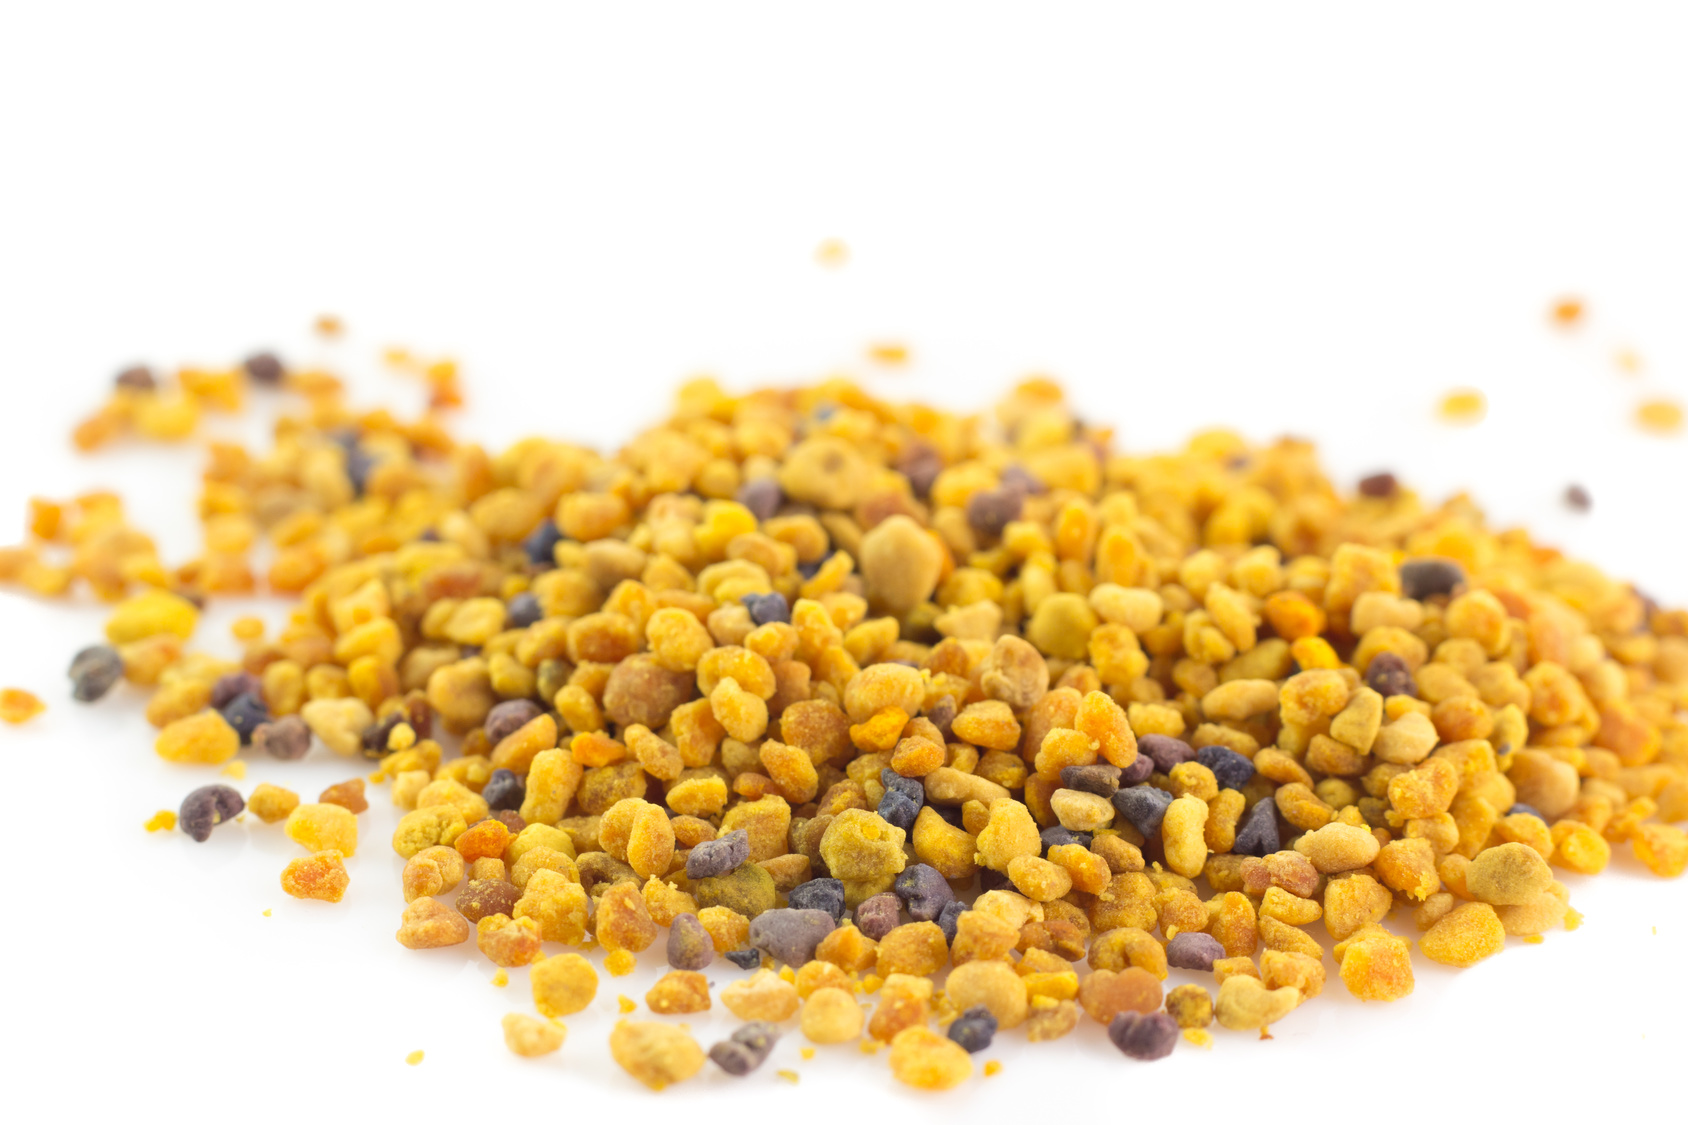 Manger du pollen frais : quelles sont ses vertus nutritionnelles ?&nbsp;© Lunipa, fotolia